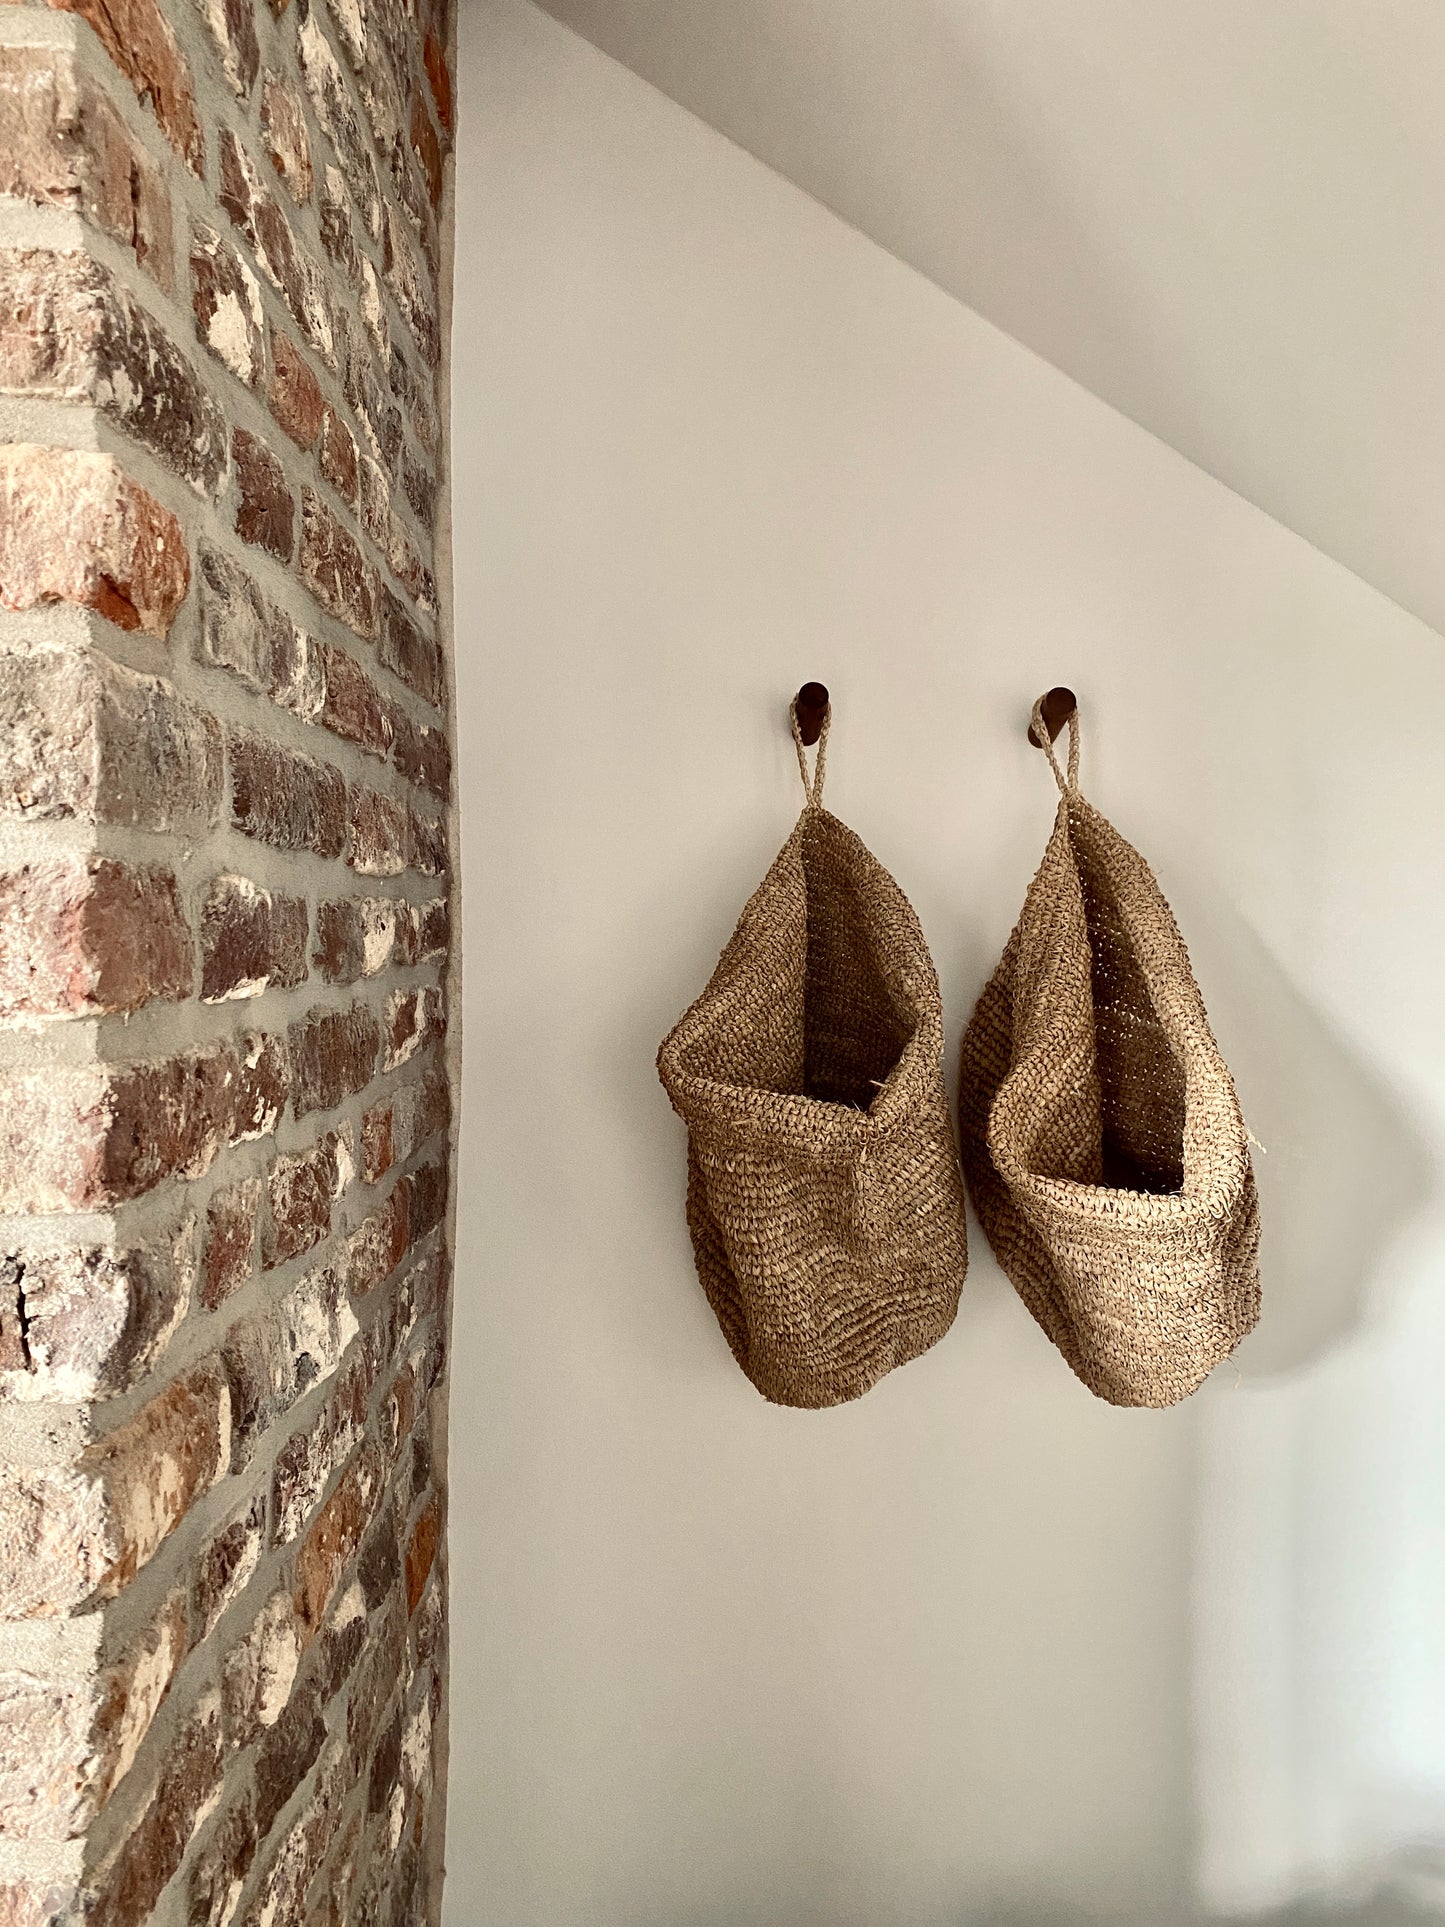 Wall basket UTARA - Hanging storage basket made of raffia